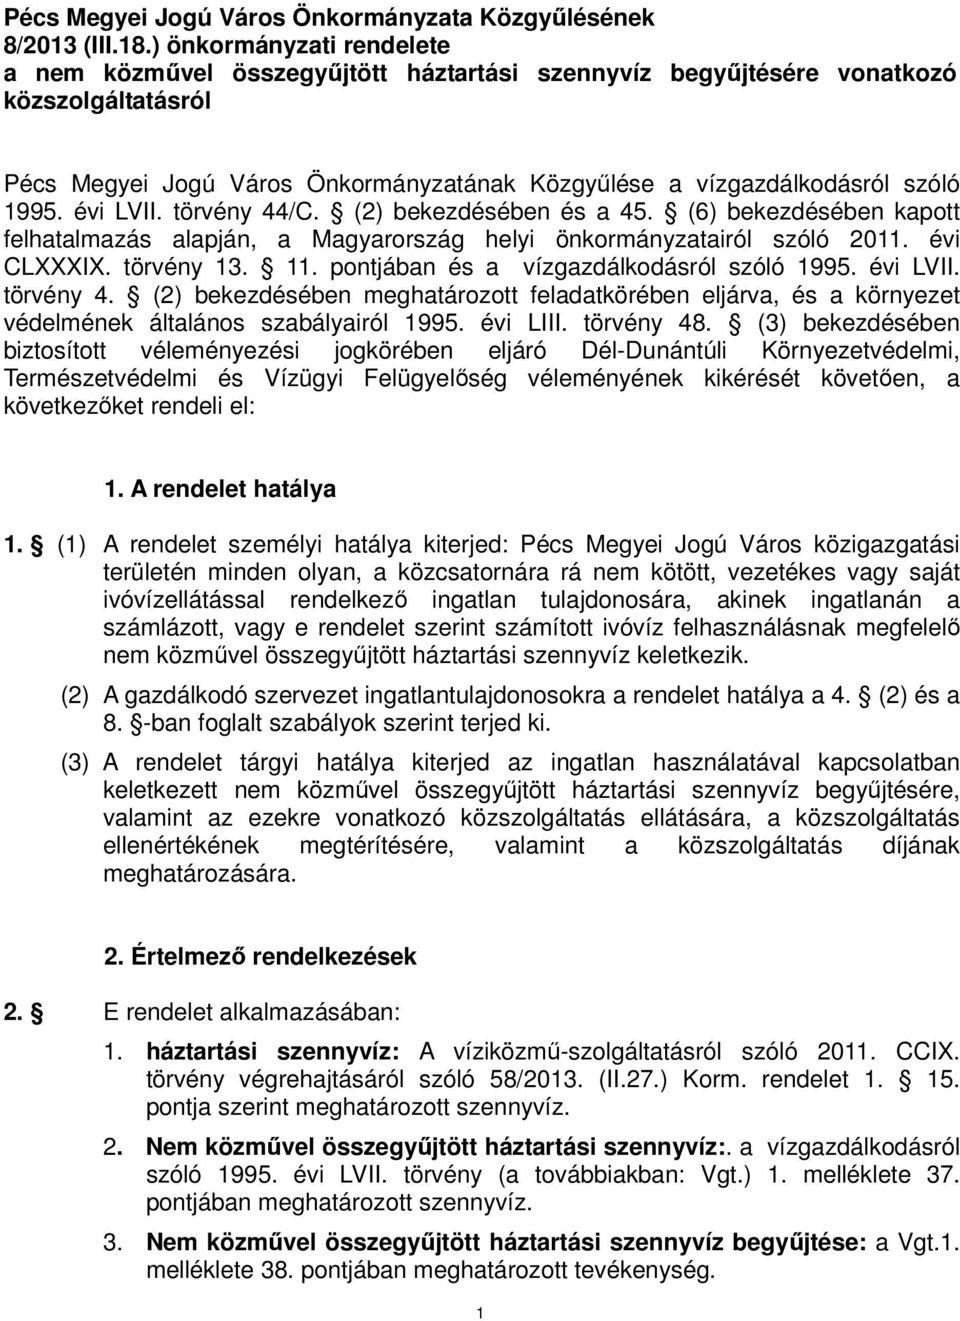 évi LVII. törvény 44/C. (2) bekezdésében és a 45. (6) bekezdésében kapott felhatalmazás alapján, a Magyarország helyi önkormányzatairól szóló 2011. évi CLXXXIX. törvény 13. 11.